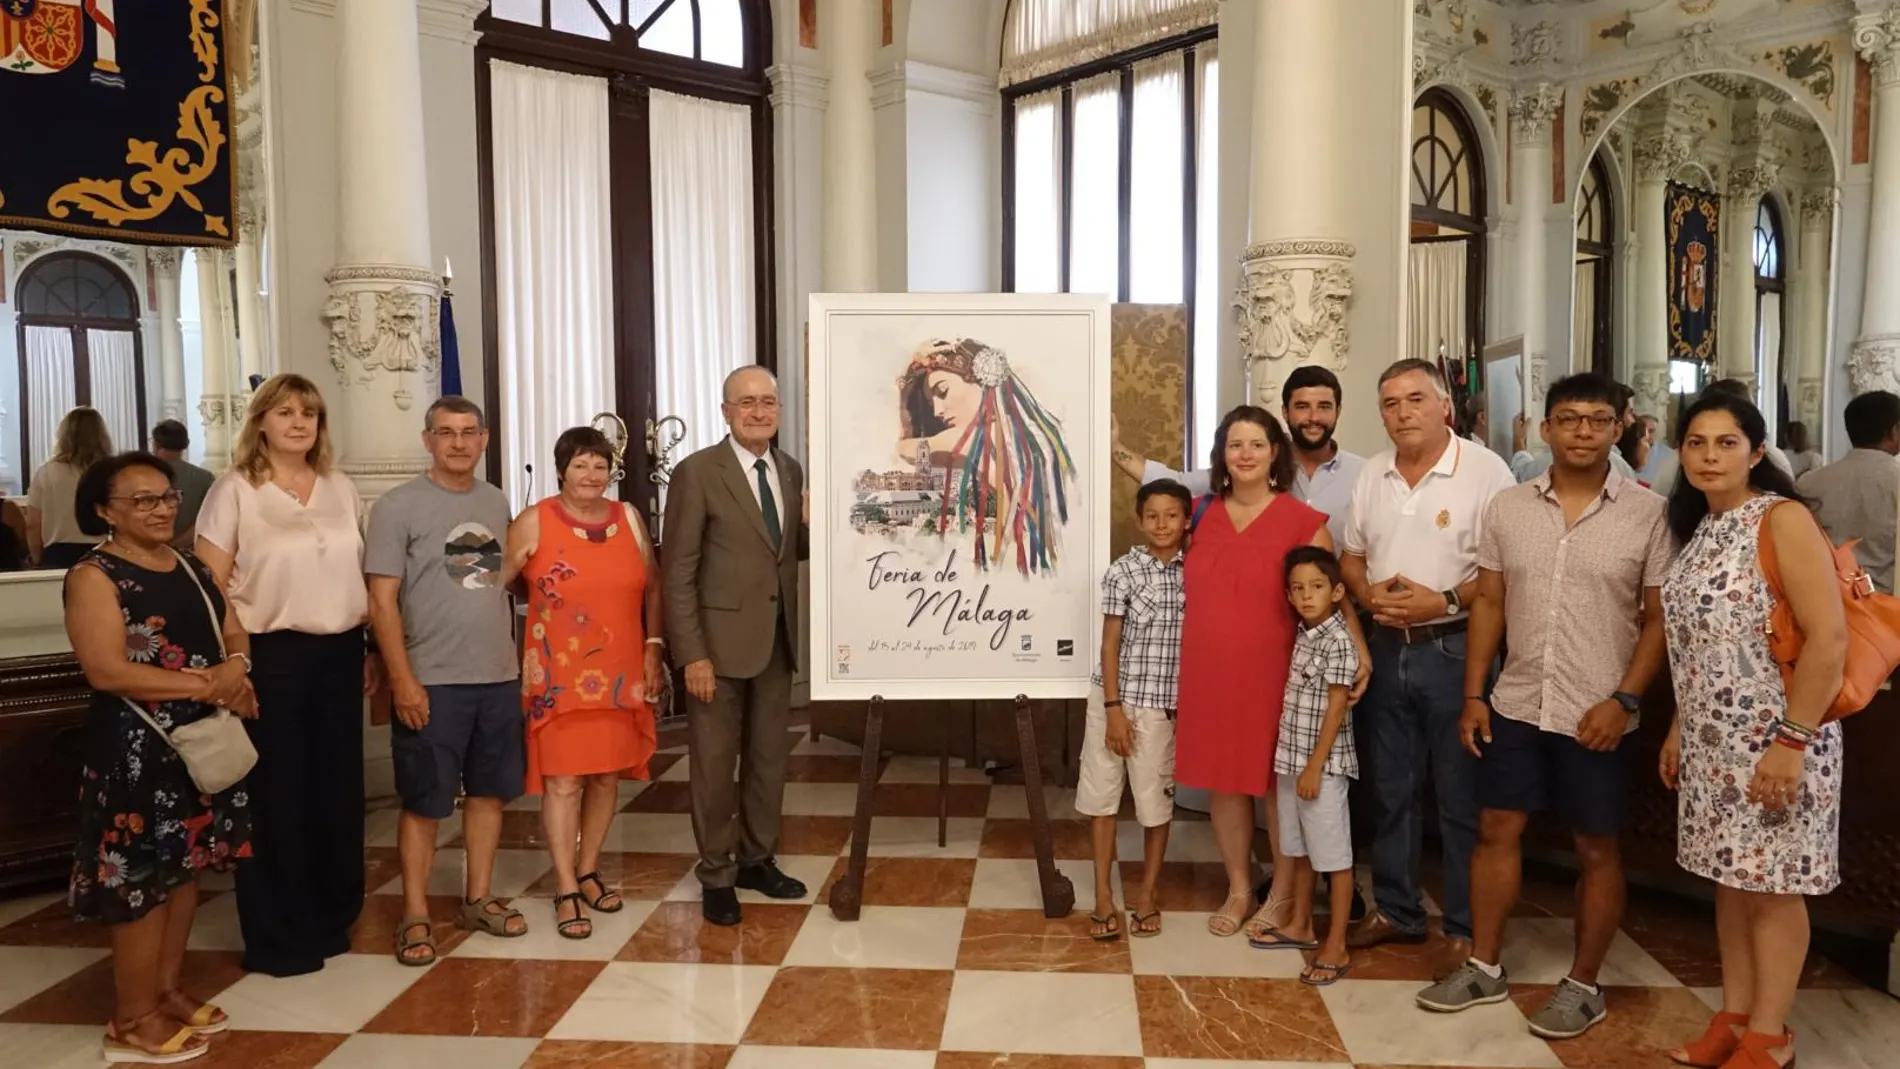 El alcalde de Málaga, Francisco de la Torre, acompañado por la concejala de Turismo y Promoción de la Ciudad, Rosa Sánchez, y los siete miembros de la familia francesa / La Razón